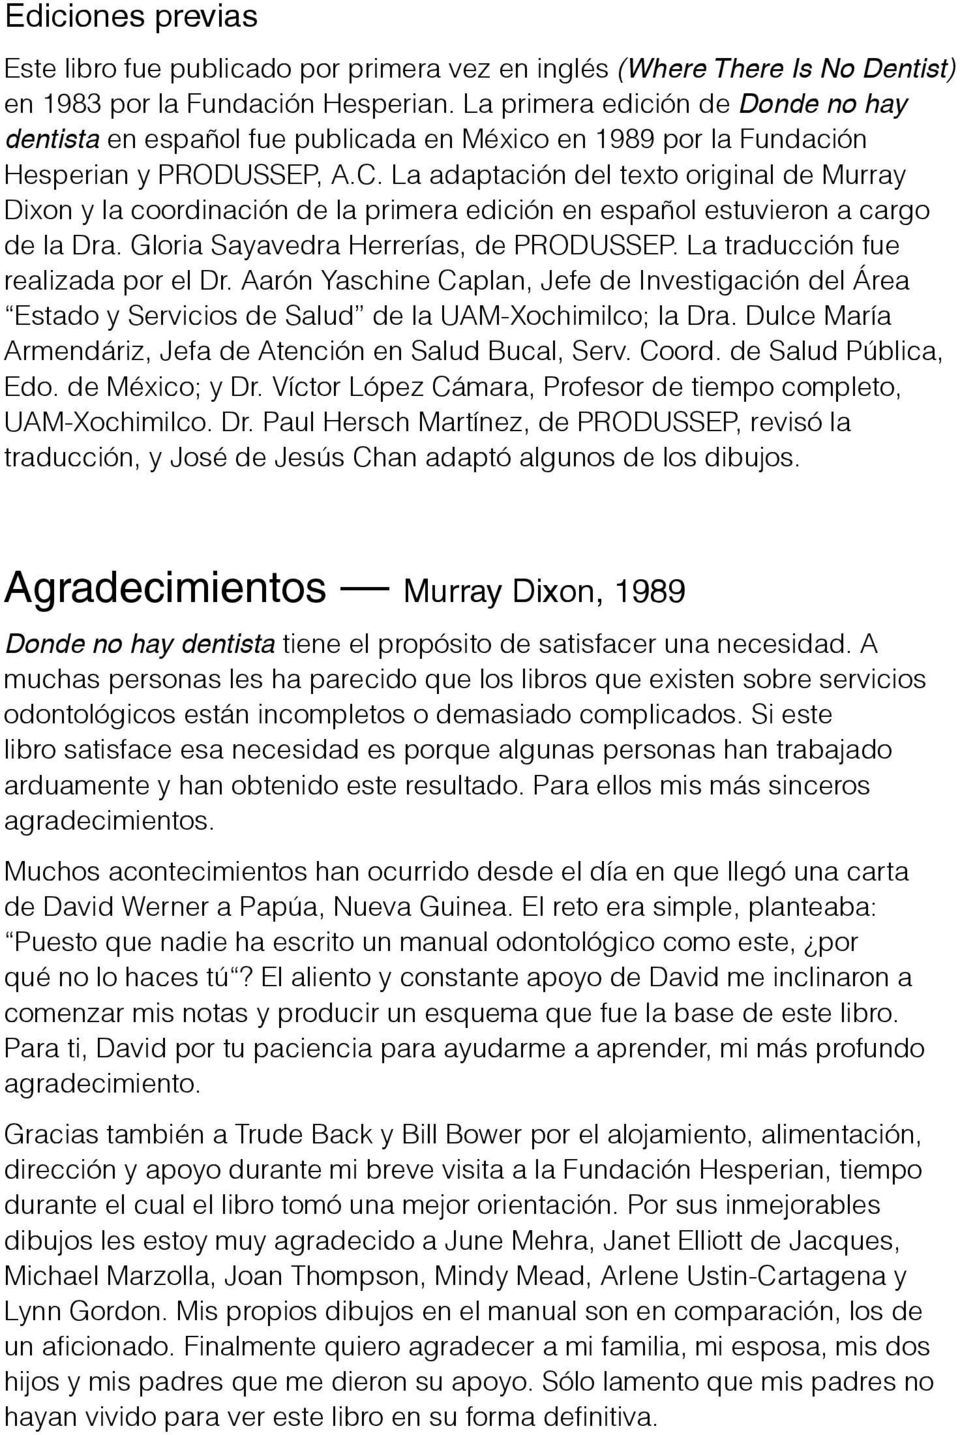 La adaptación del texto original de Murray Dixon y la coordinación de la primera edición en español estuvieron a cargo de la Dra. Gloria Sayavedra Herrerías, de PRODUSSEP.